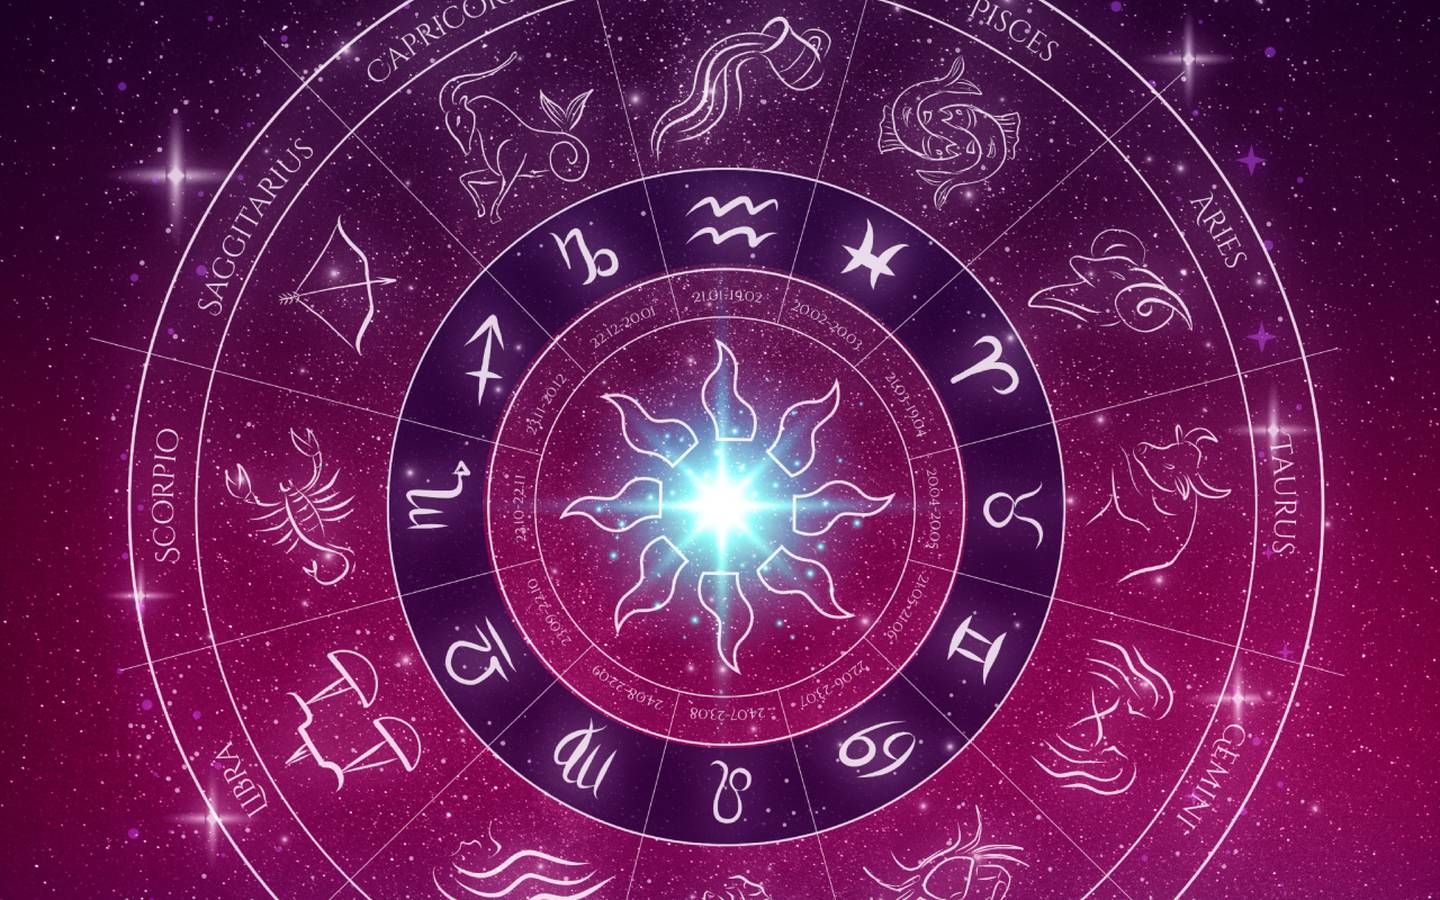 Circulo de los signos del zodiaco